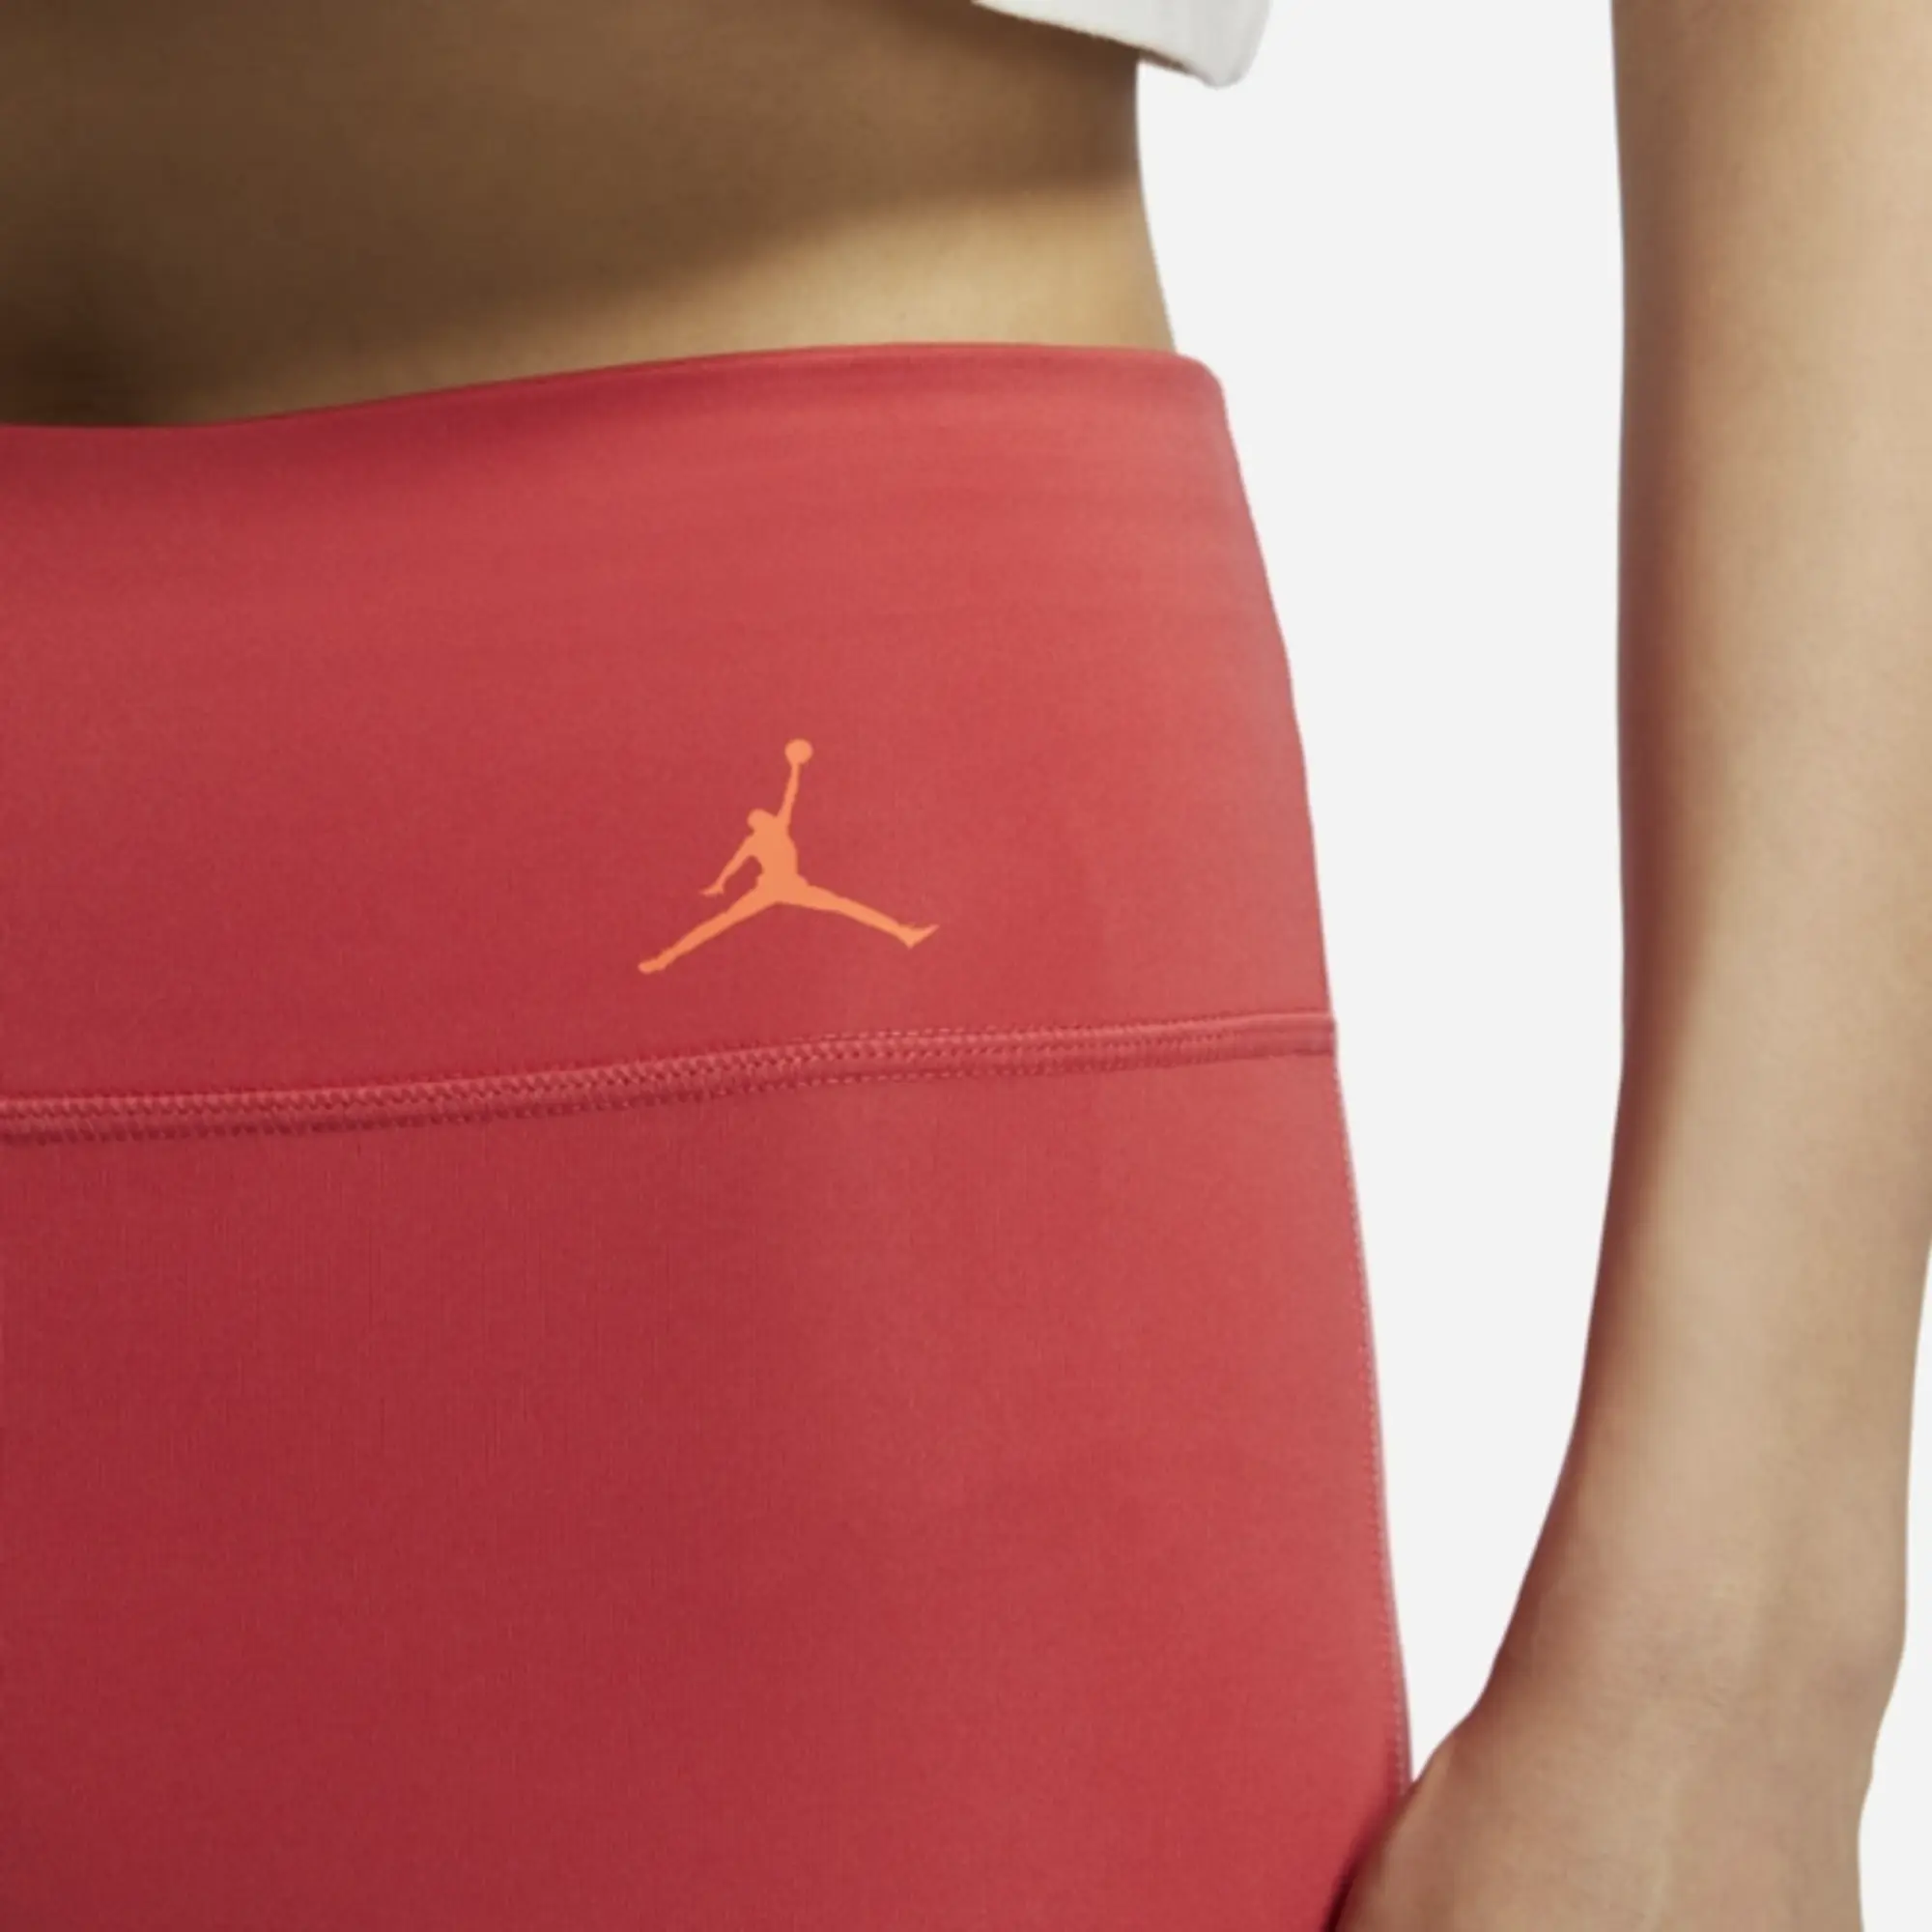 Nike Jordan Sport Women's Logo Leggings - Red